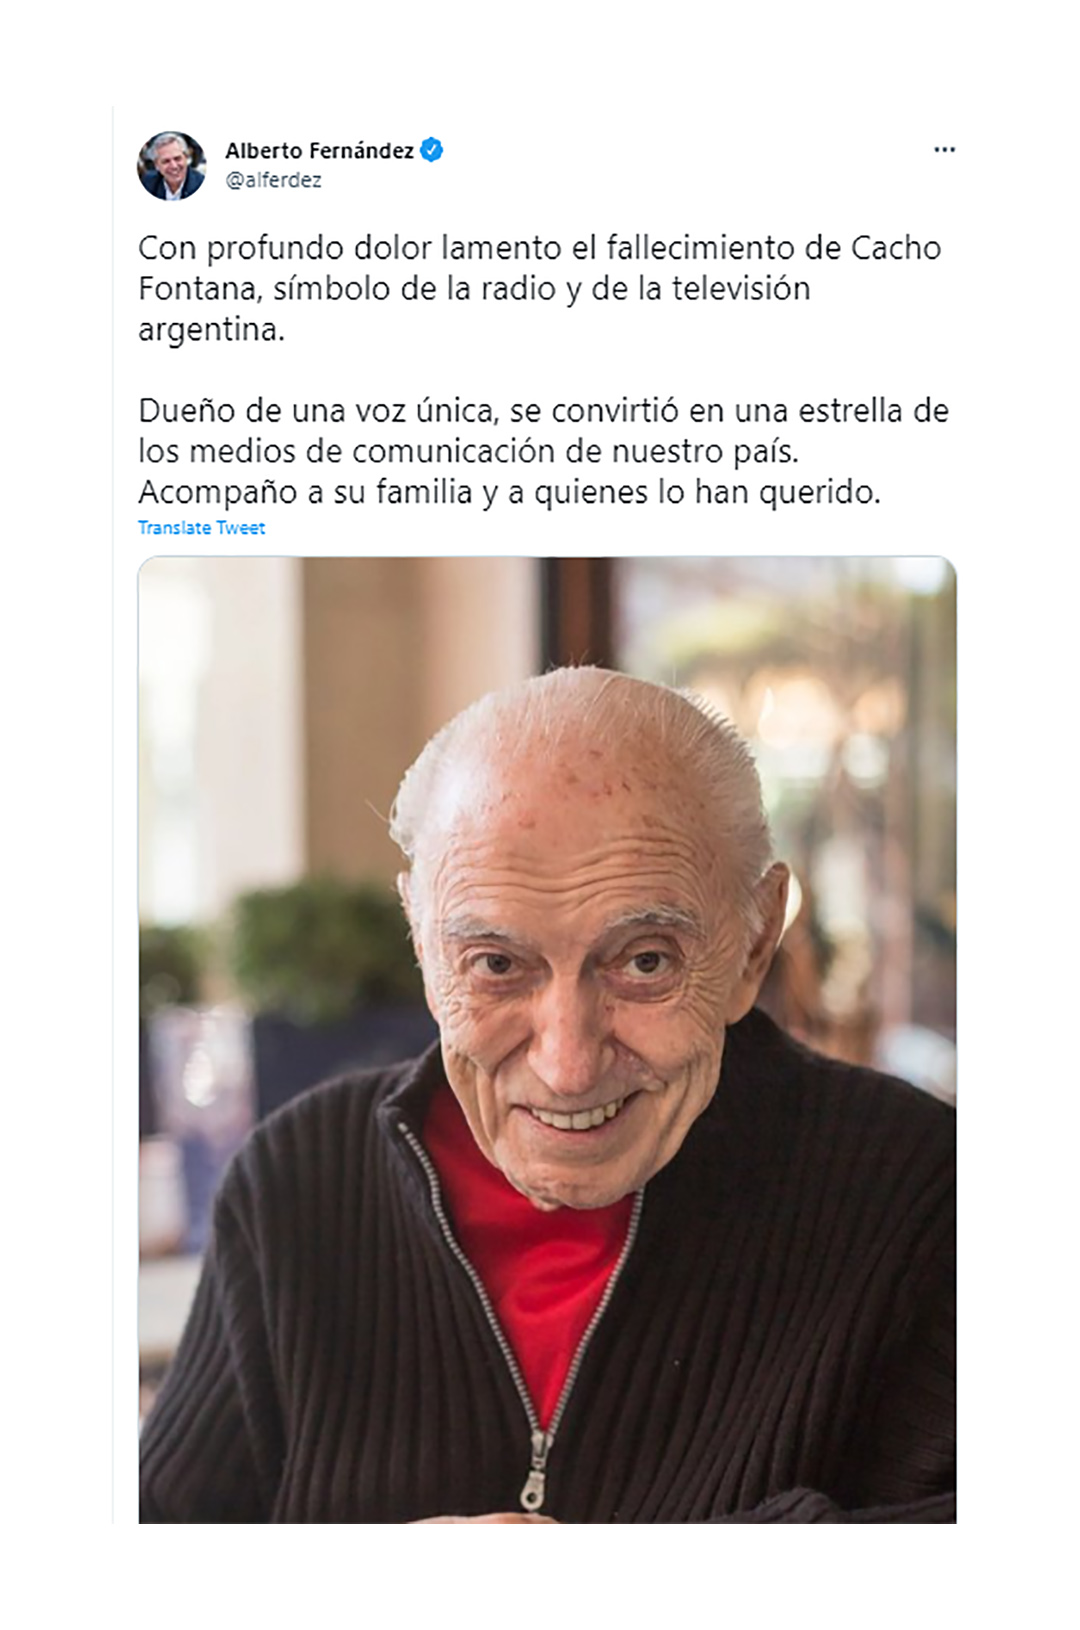 El mensaje de Alberto Fernández para Cacho Fontana (Twitter)